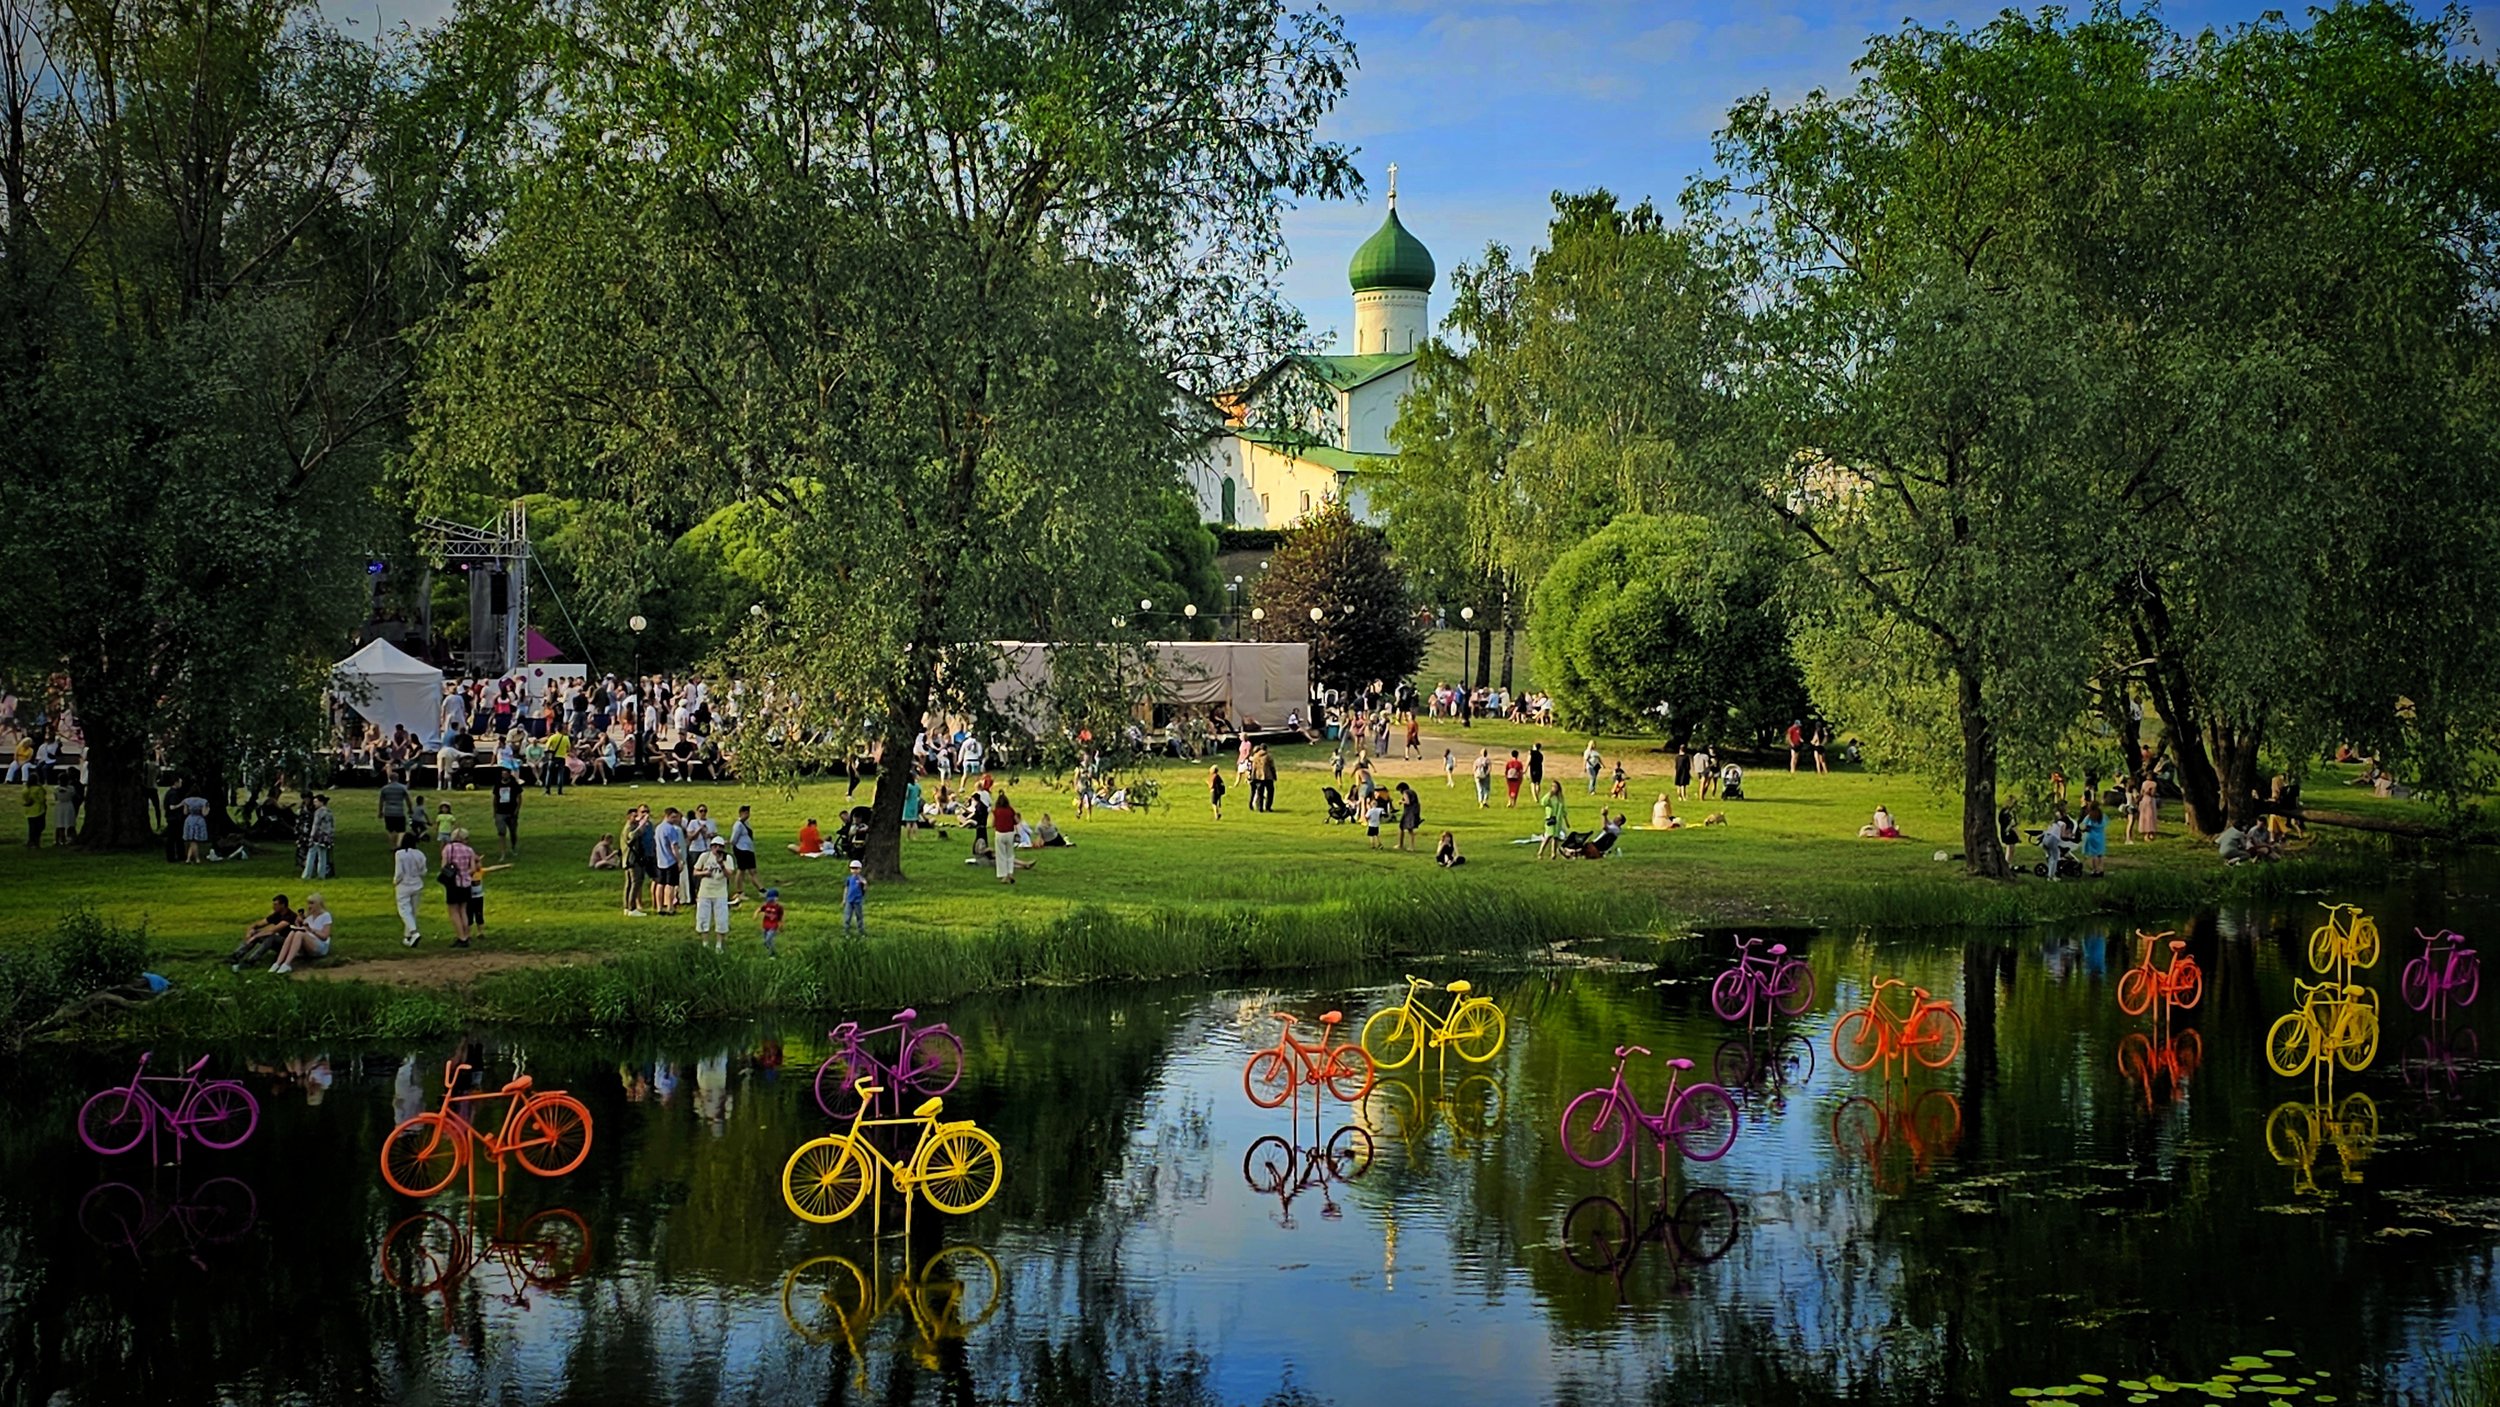 Храм Богоявления к.XV в.Река Пскова. Финский парк. И праздник «Виноград»